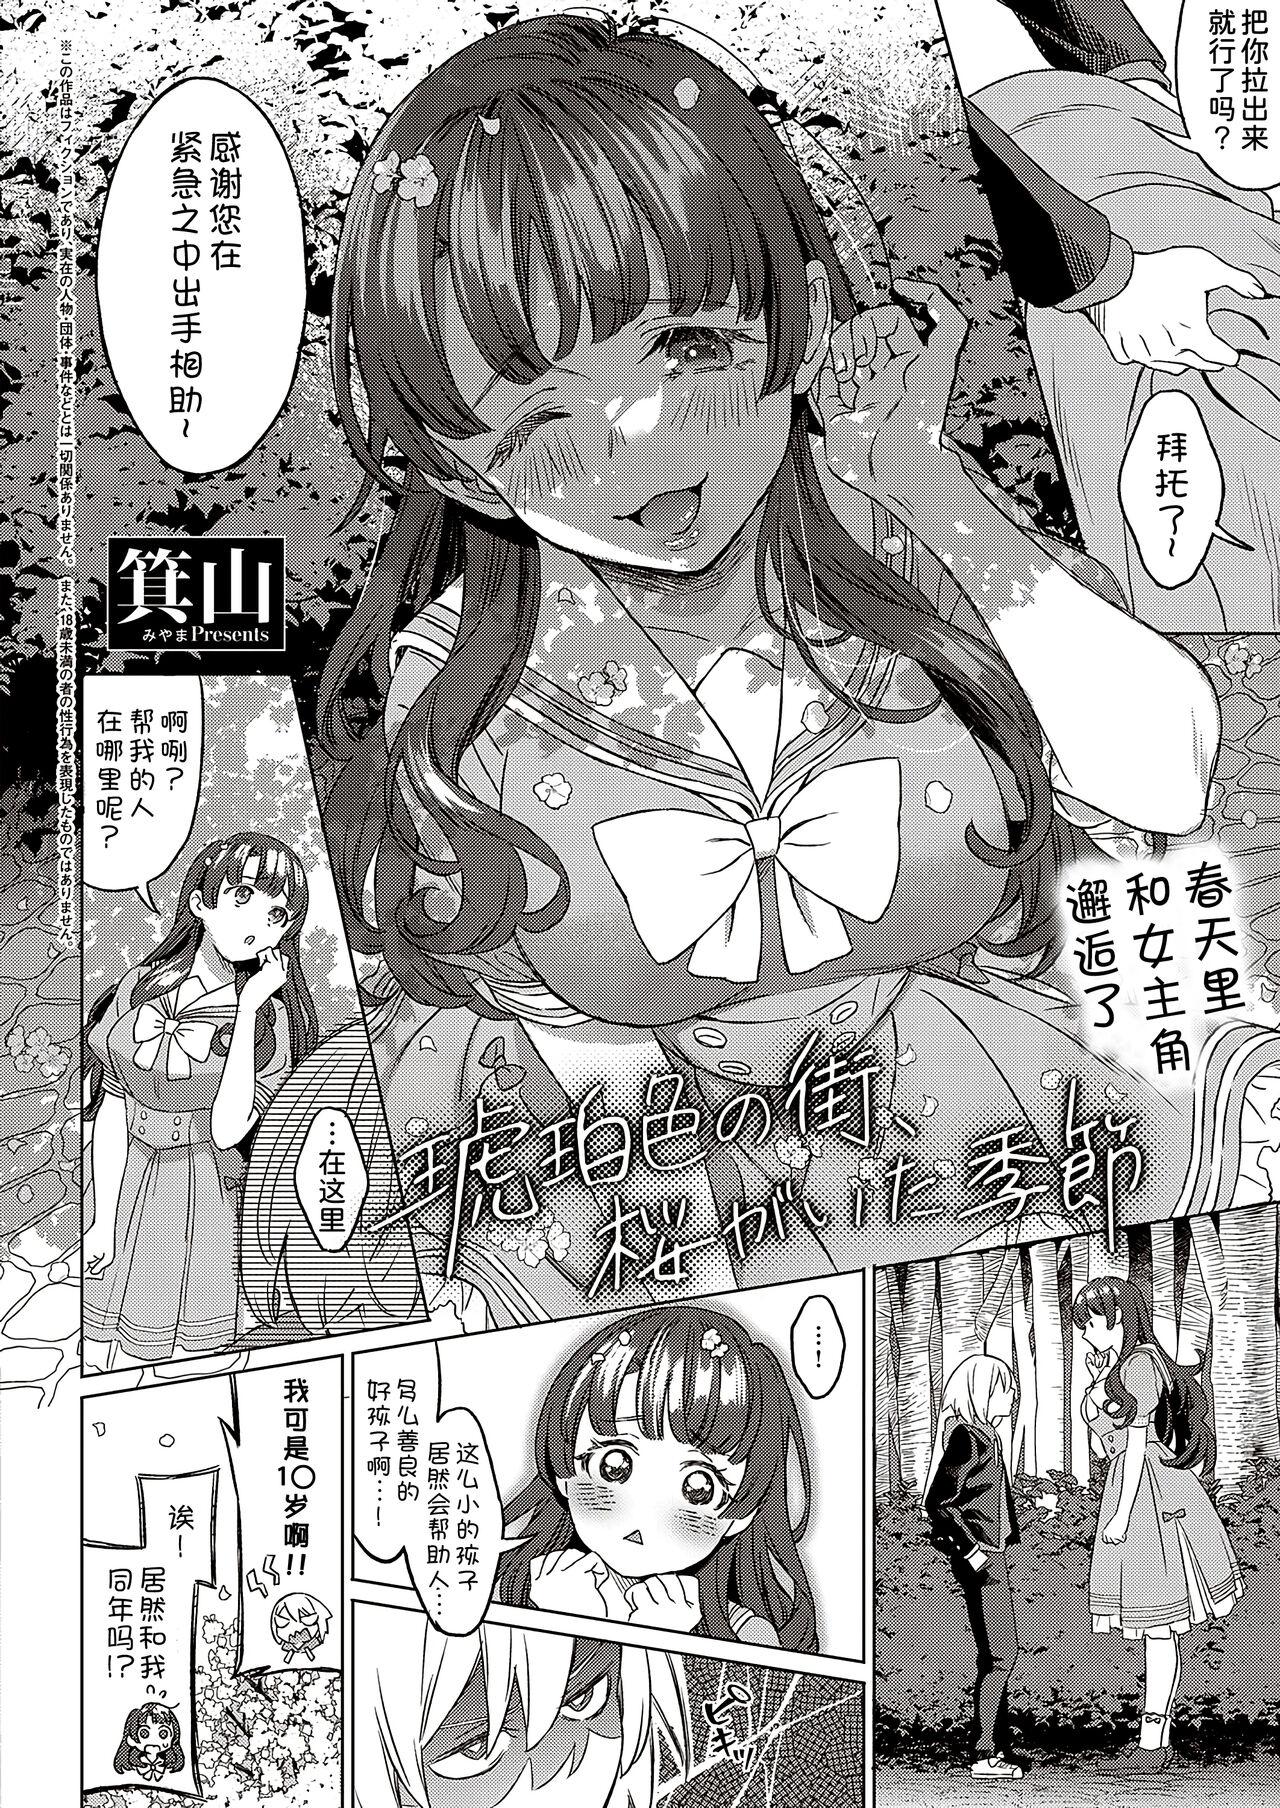 Slapping Kohakuiro no Machi, Sakura ga Ita Kisetsu Condom - Page 3